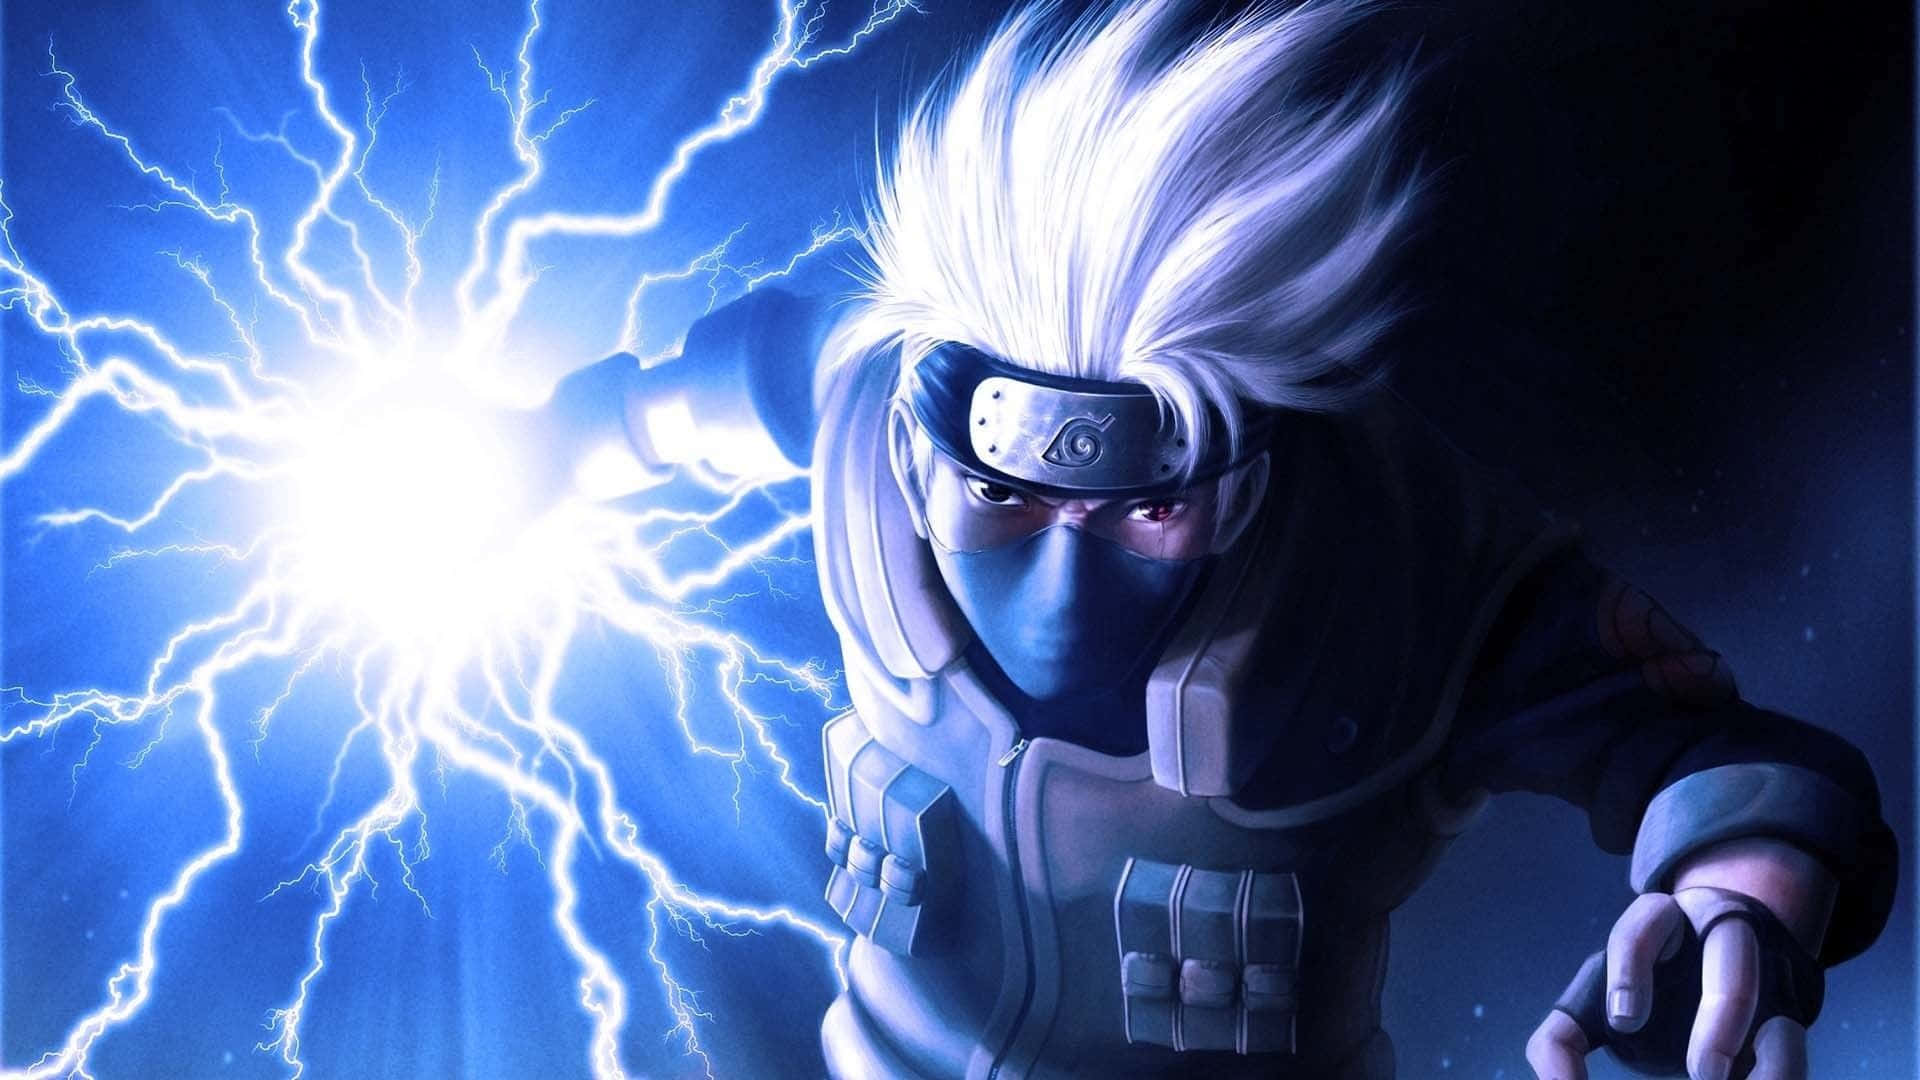 The Raikiri's Mighty Lightning Strike Wallpaper